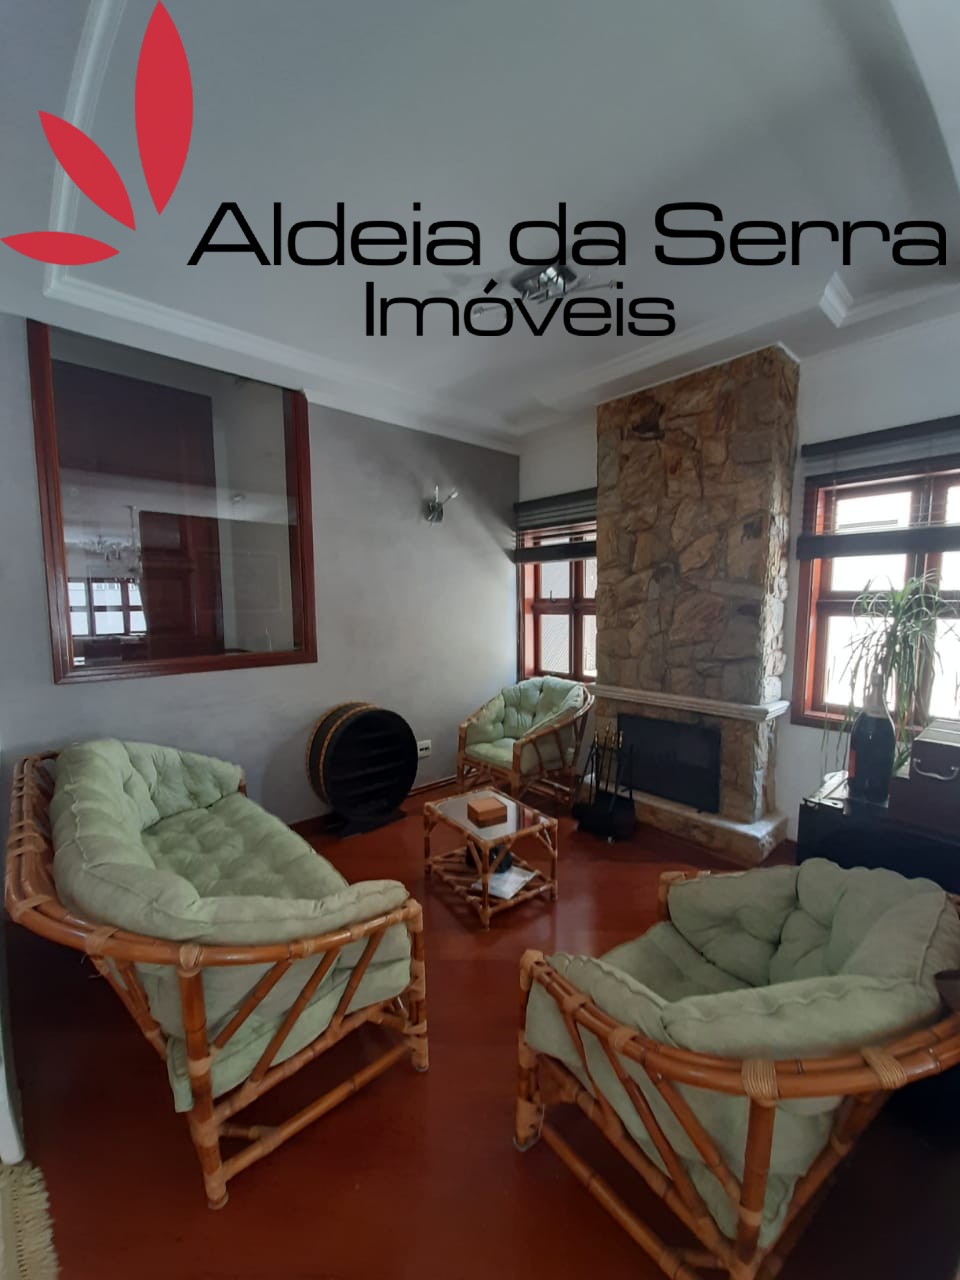 /admin/imoveis/fotos/IMG-20211105-WA0009.jpg Aldeia da Serra Imoveis